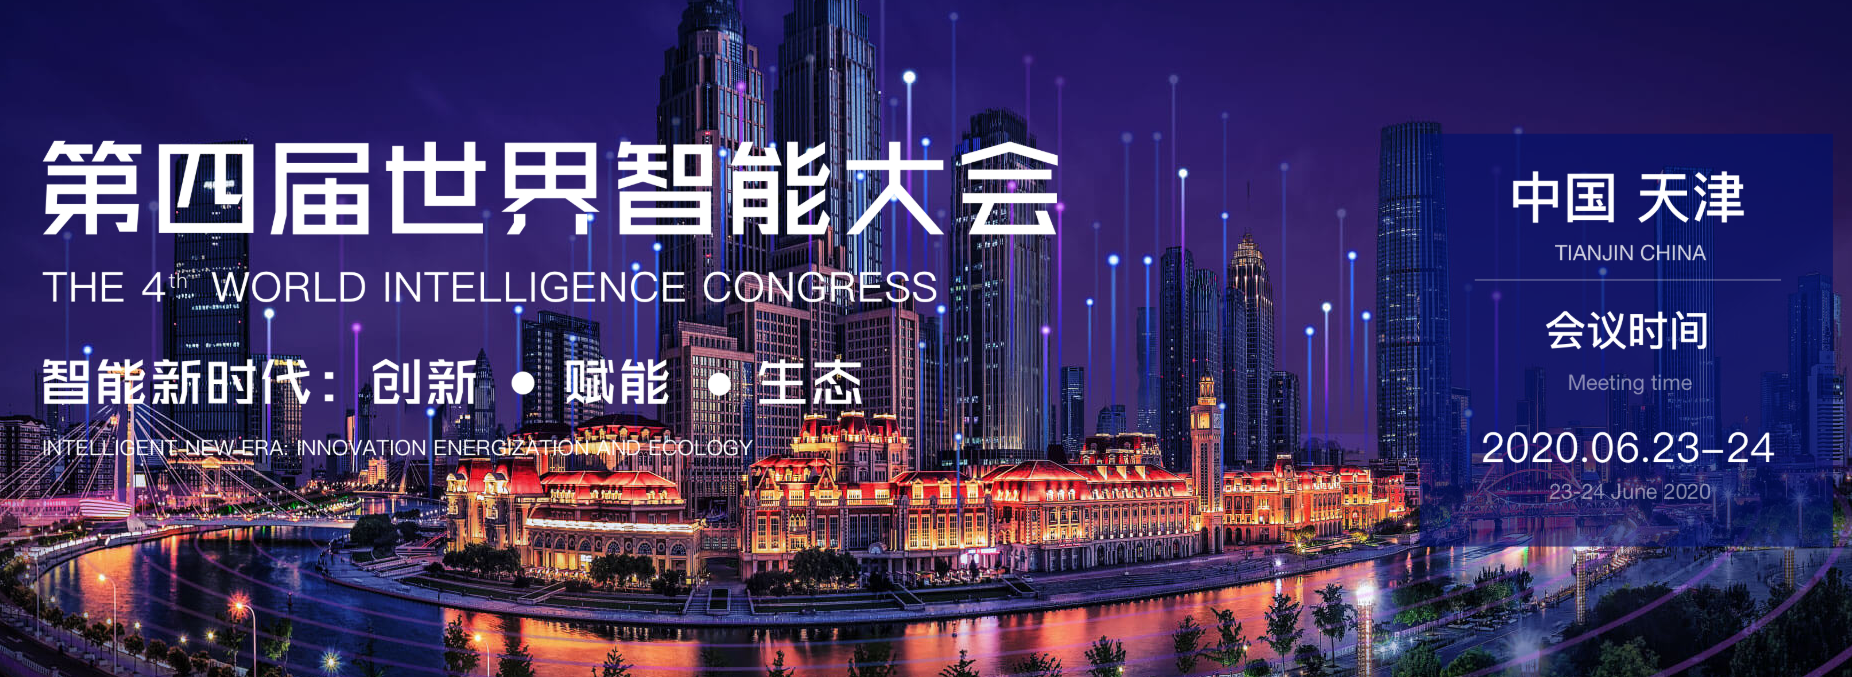 王坚、杨元庆等大佬在第四届世界智能大会上共话技术创新